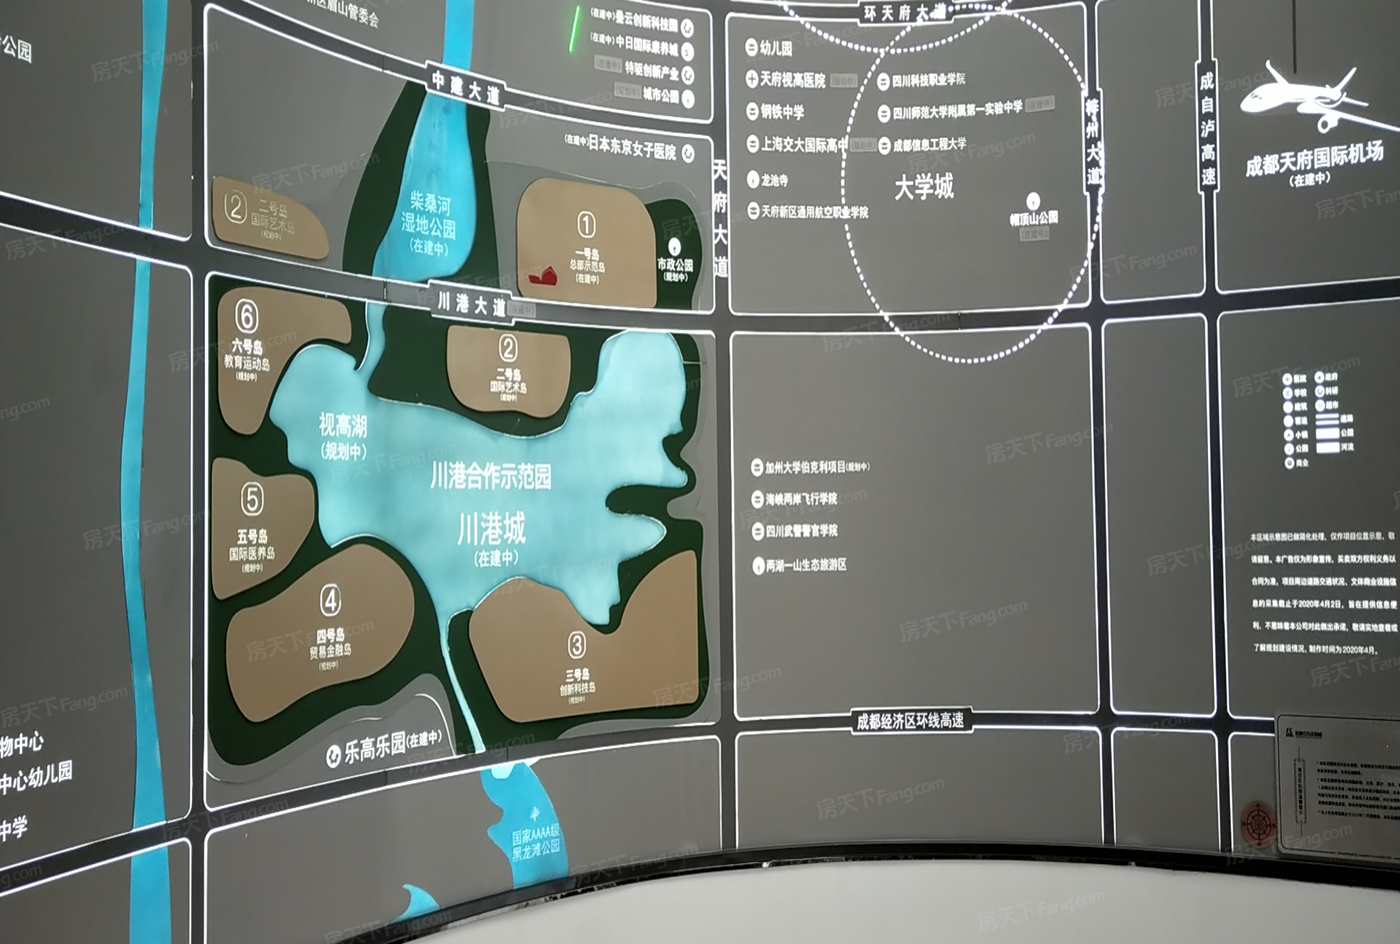 川港合作示范园位置图片